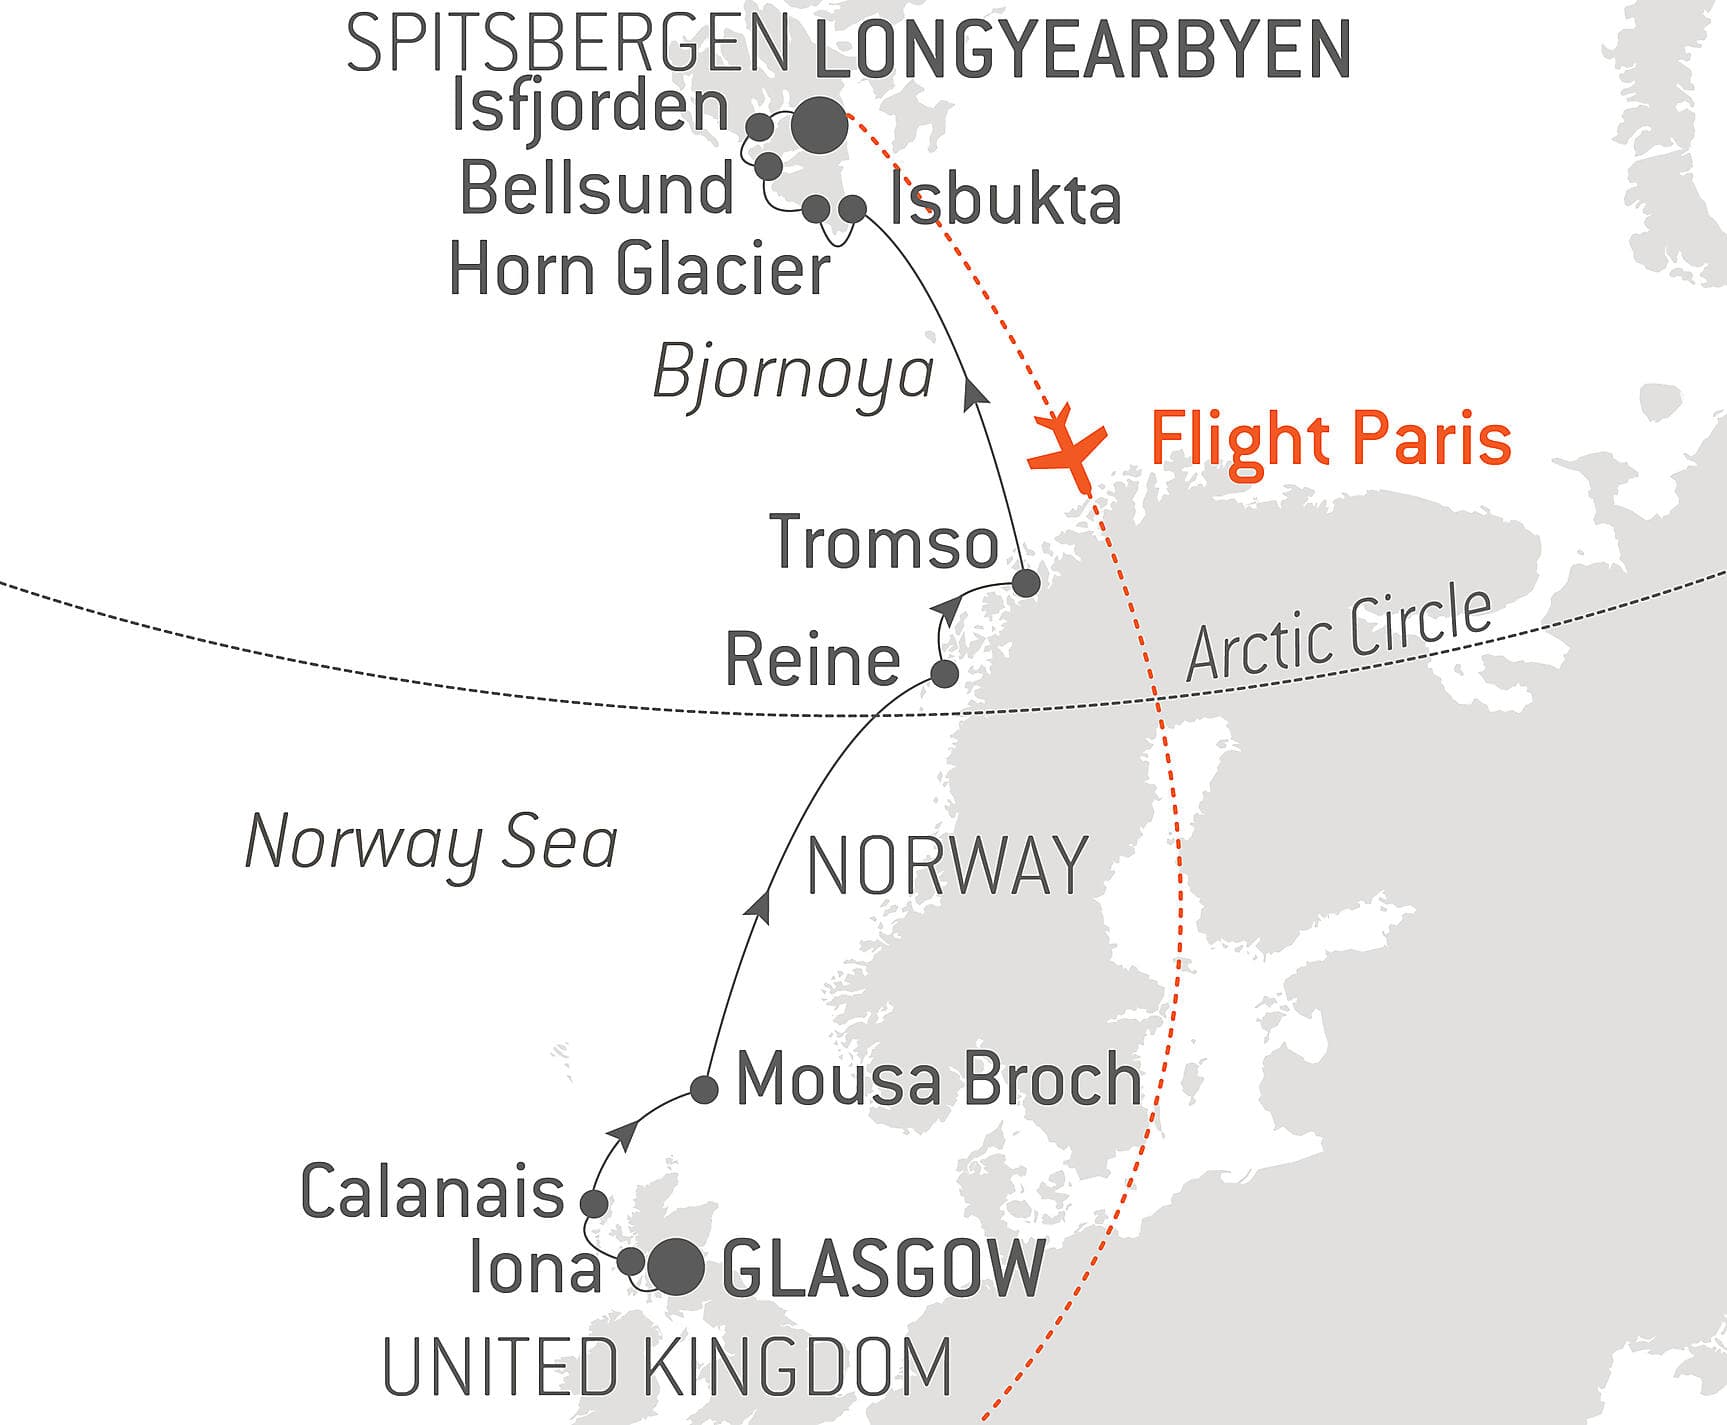 From Scotland to Spitsbergen